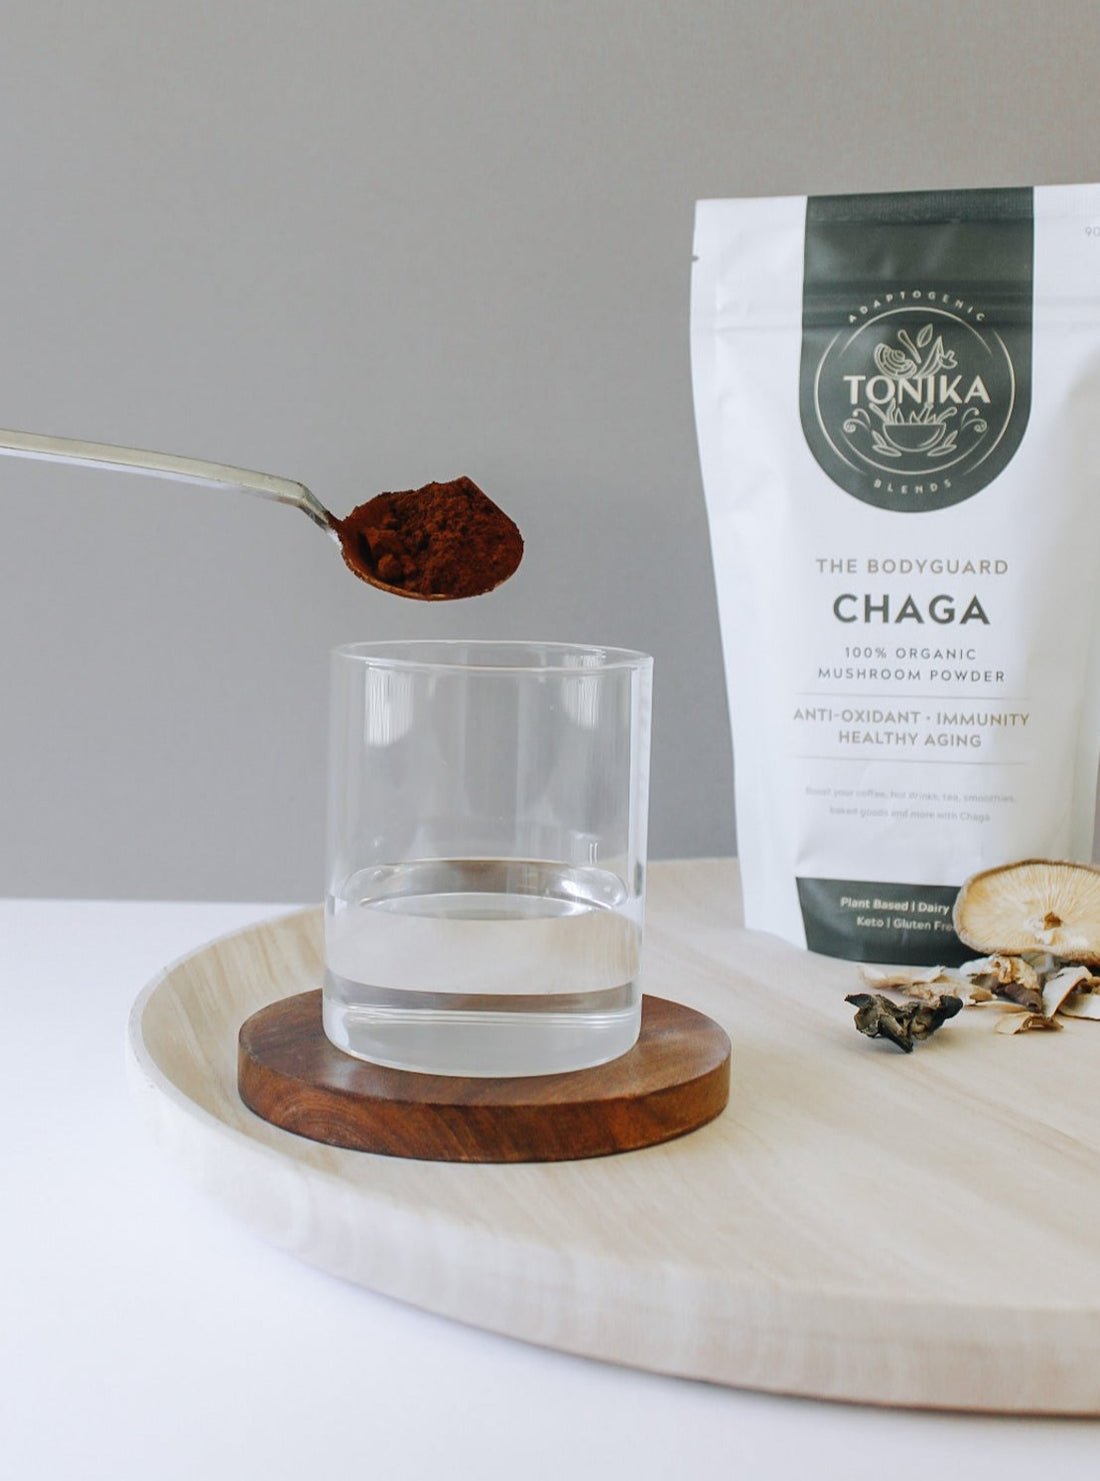 Tonika 100% Organic Mushroom Powder Chaga (The Bodyguard) 90g